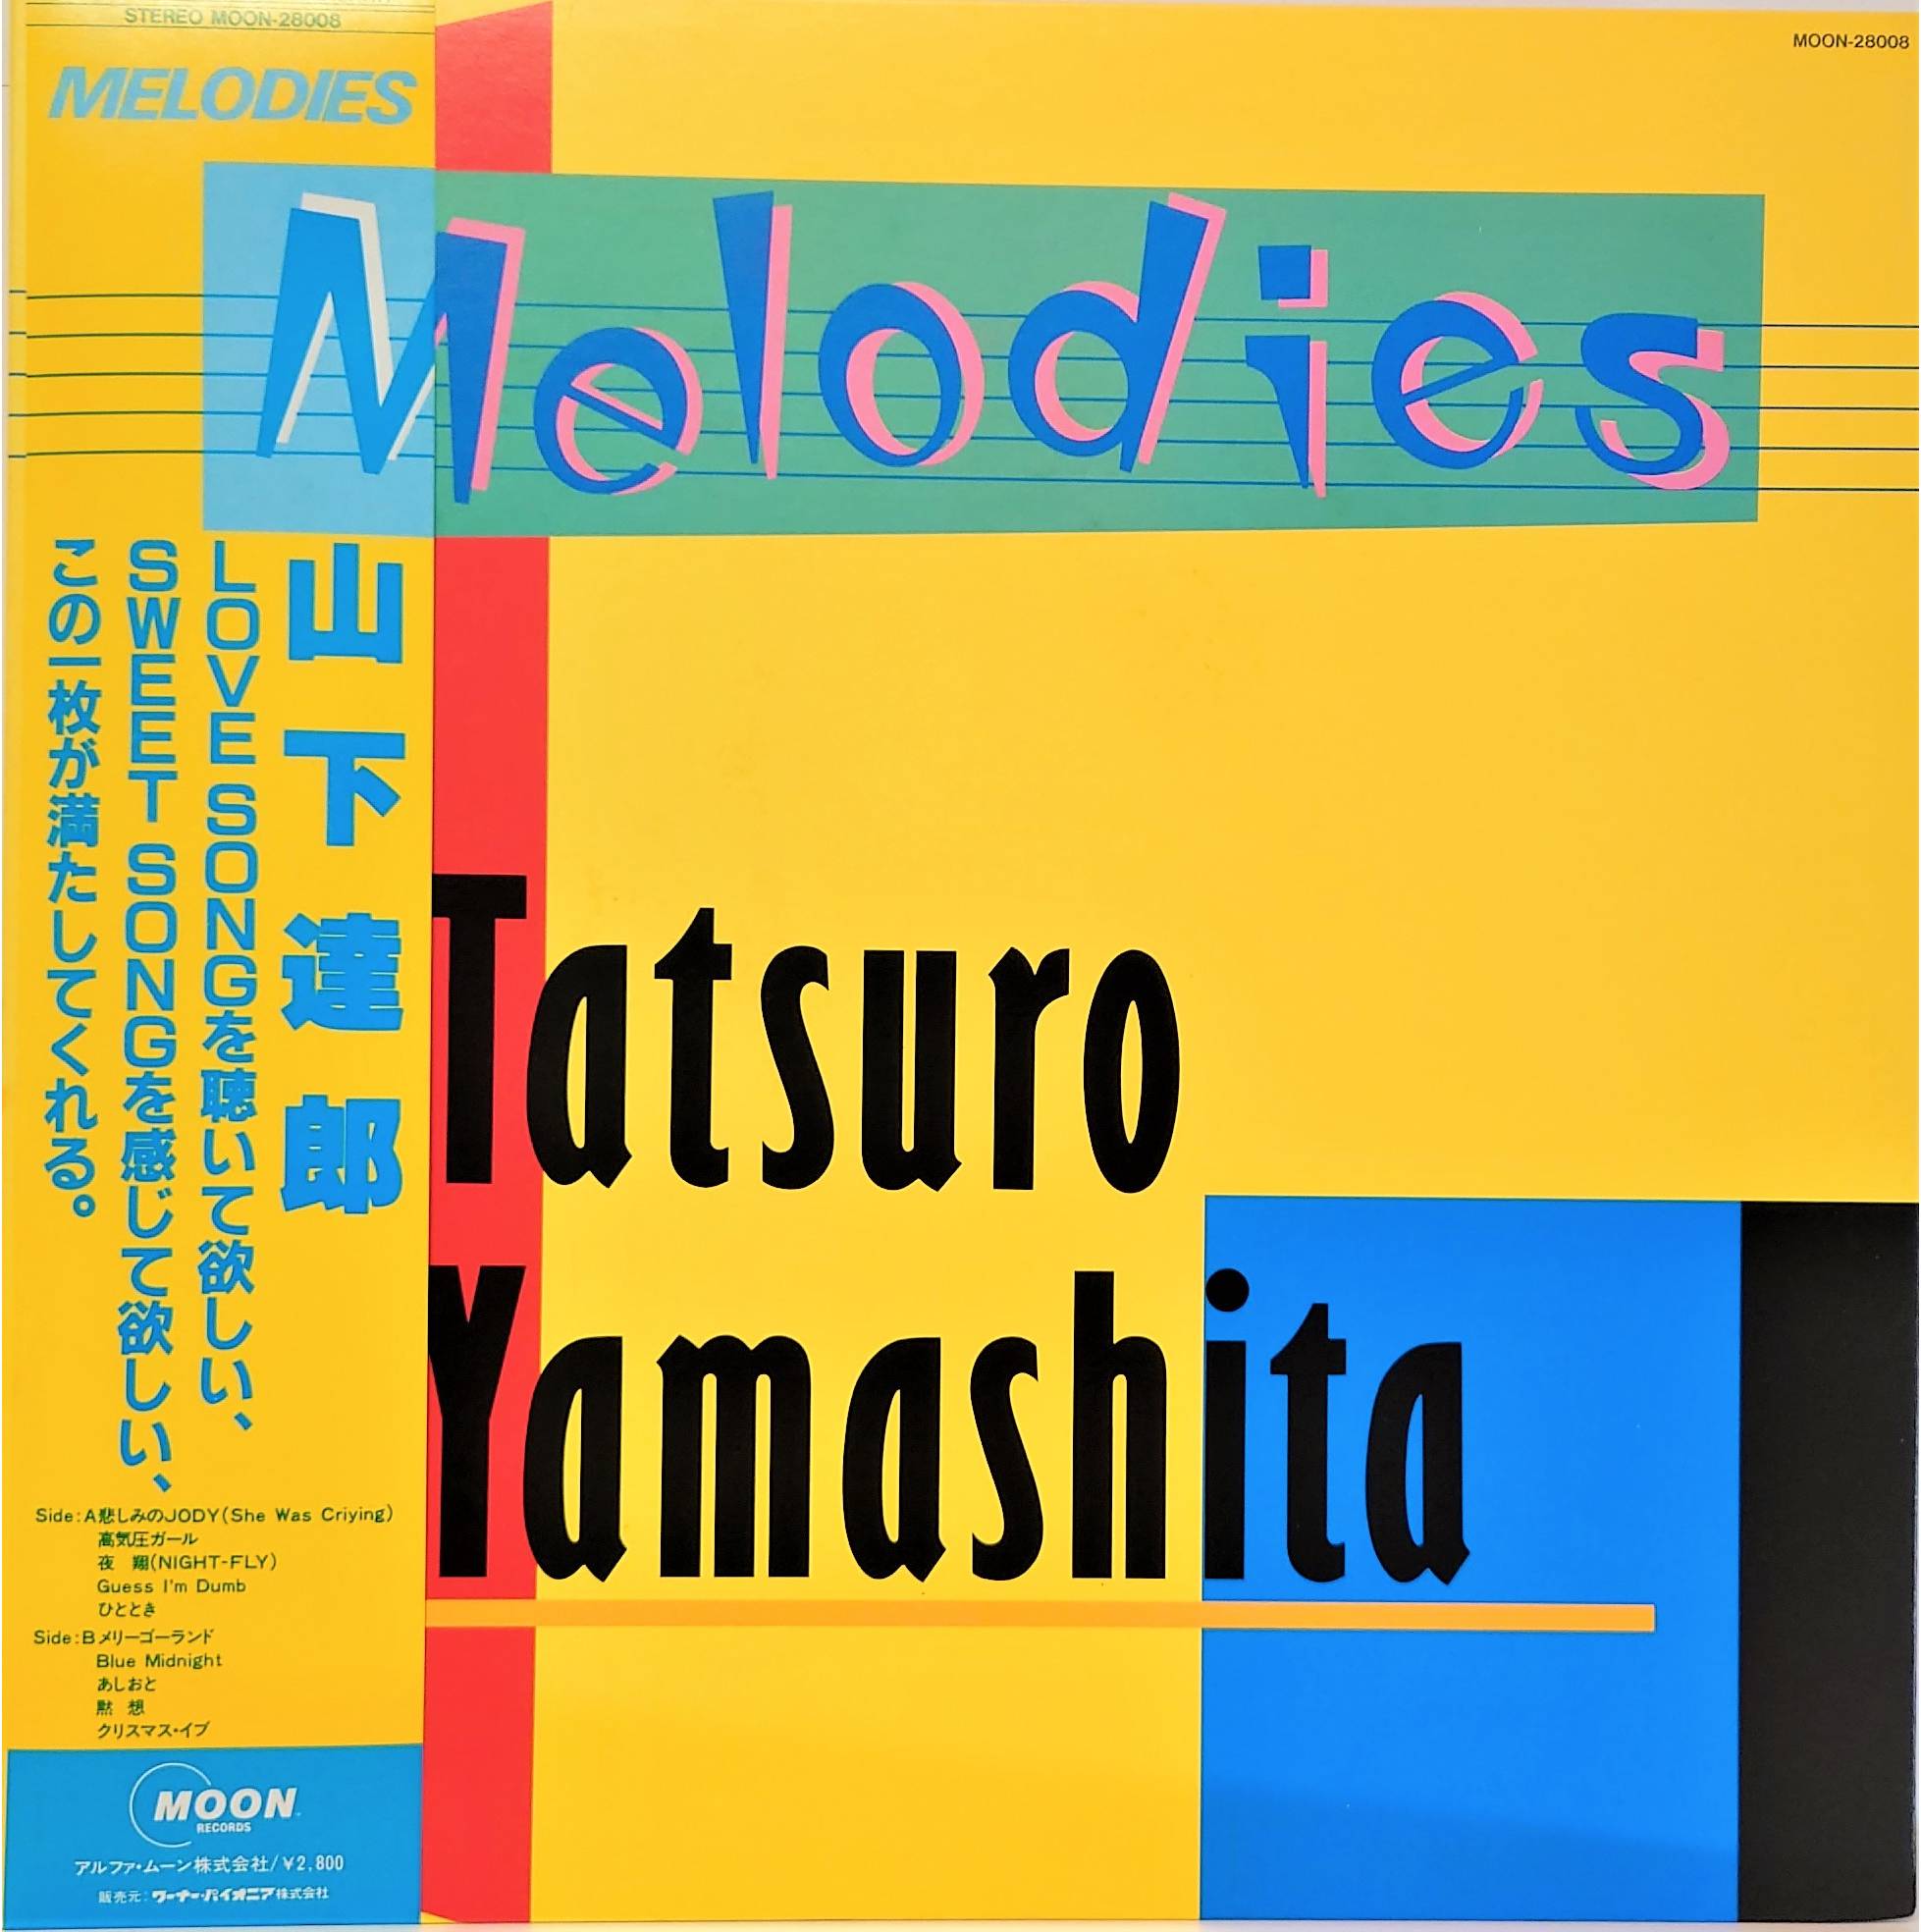 山下達郎 Melodies メロディーズ レコード 帯付きオリジナル盤